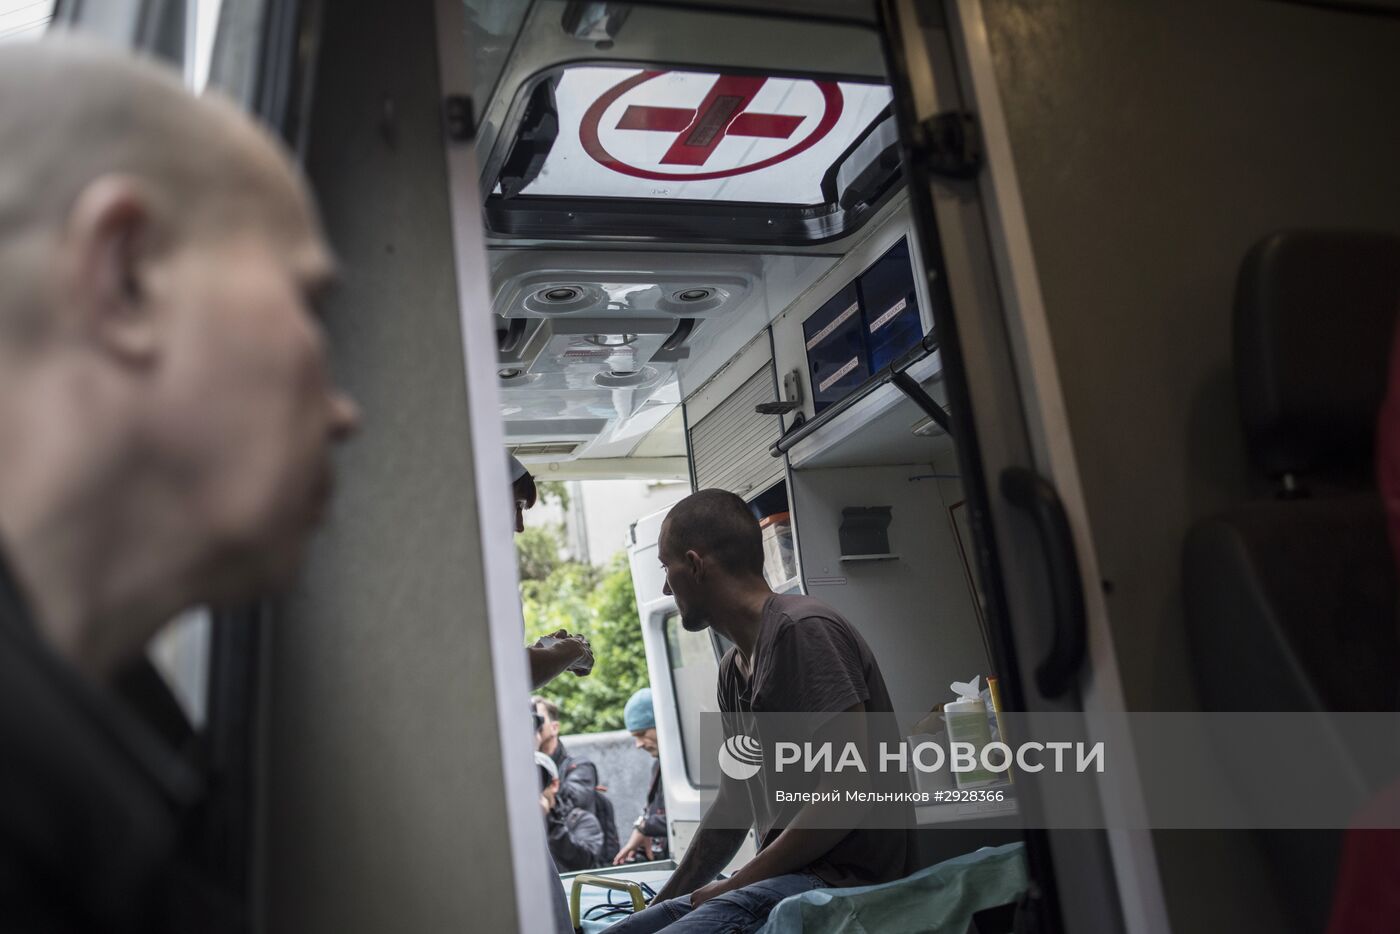 Работа мобильных прививочных пунктов в Москве